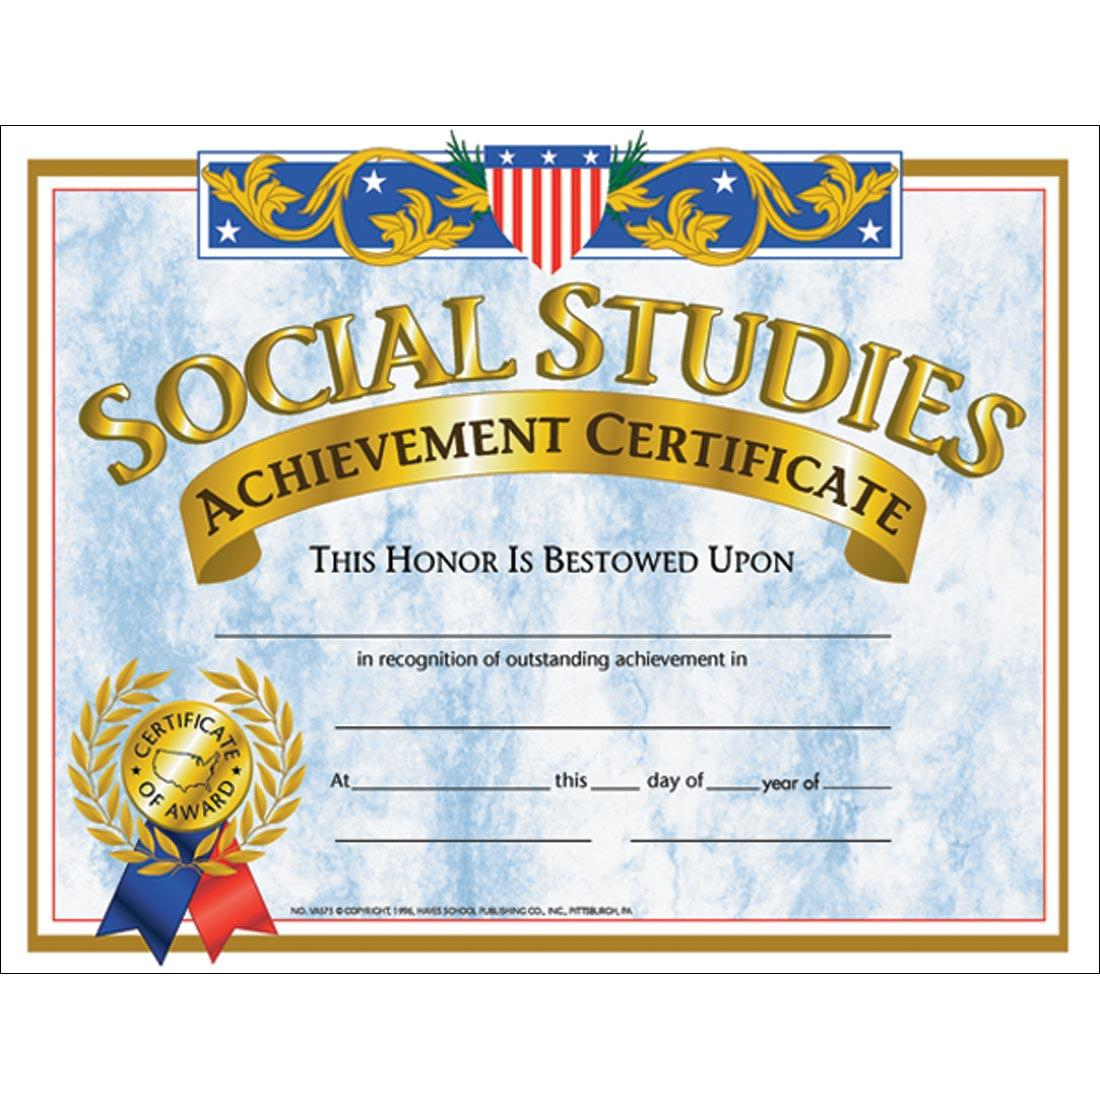 Social Studies Achievement Certificates with regard to Social Studies Certificate